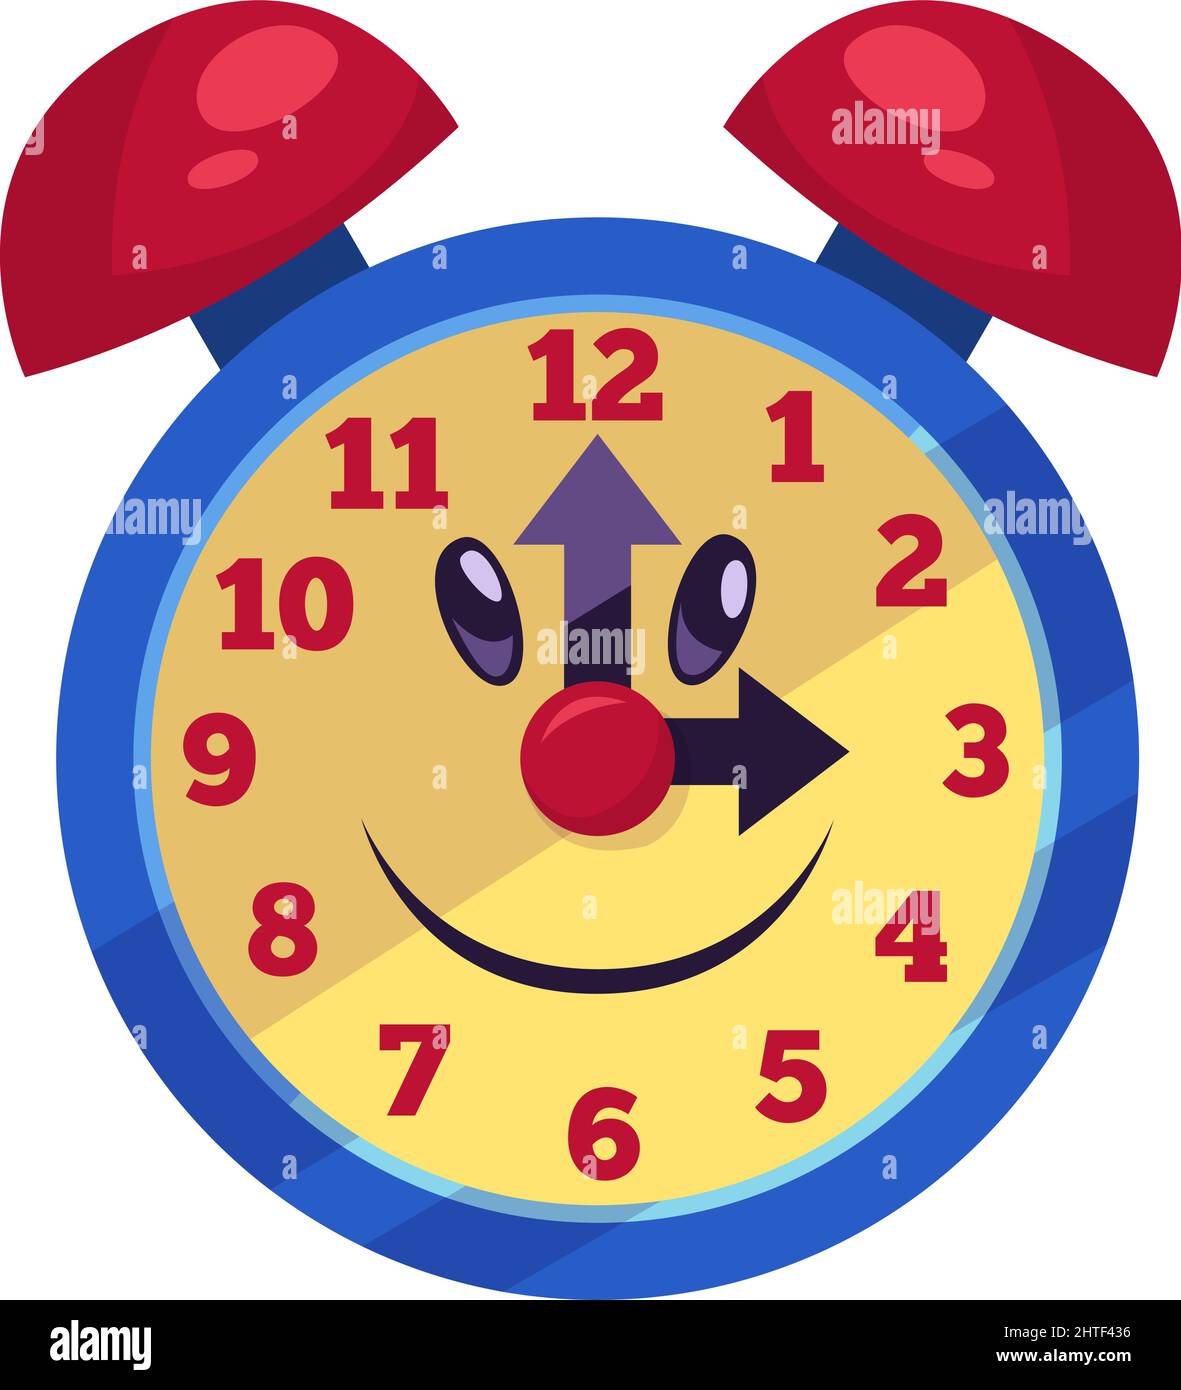 reloj despertador niños juguete 10531031 Vector en Vecteezy